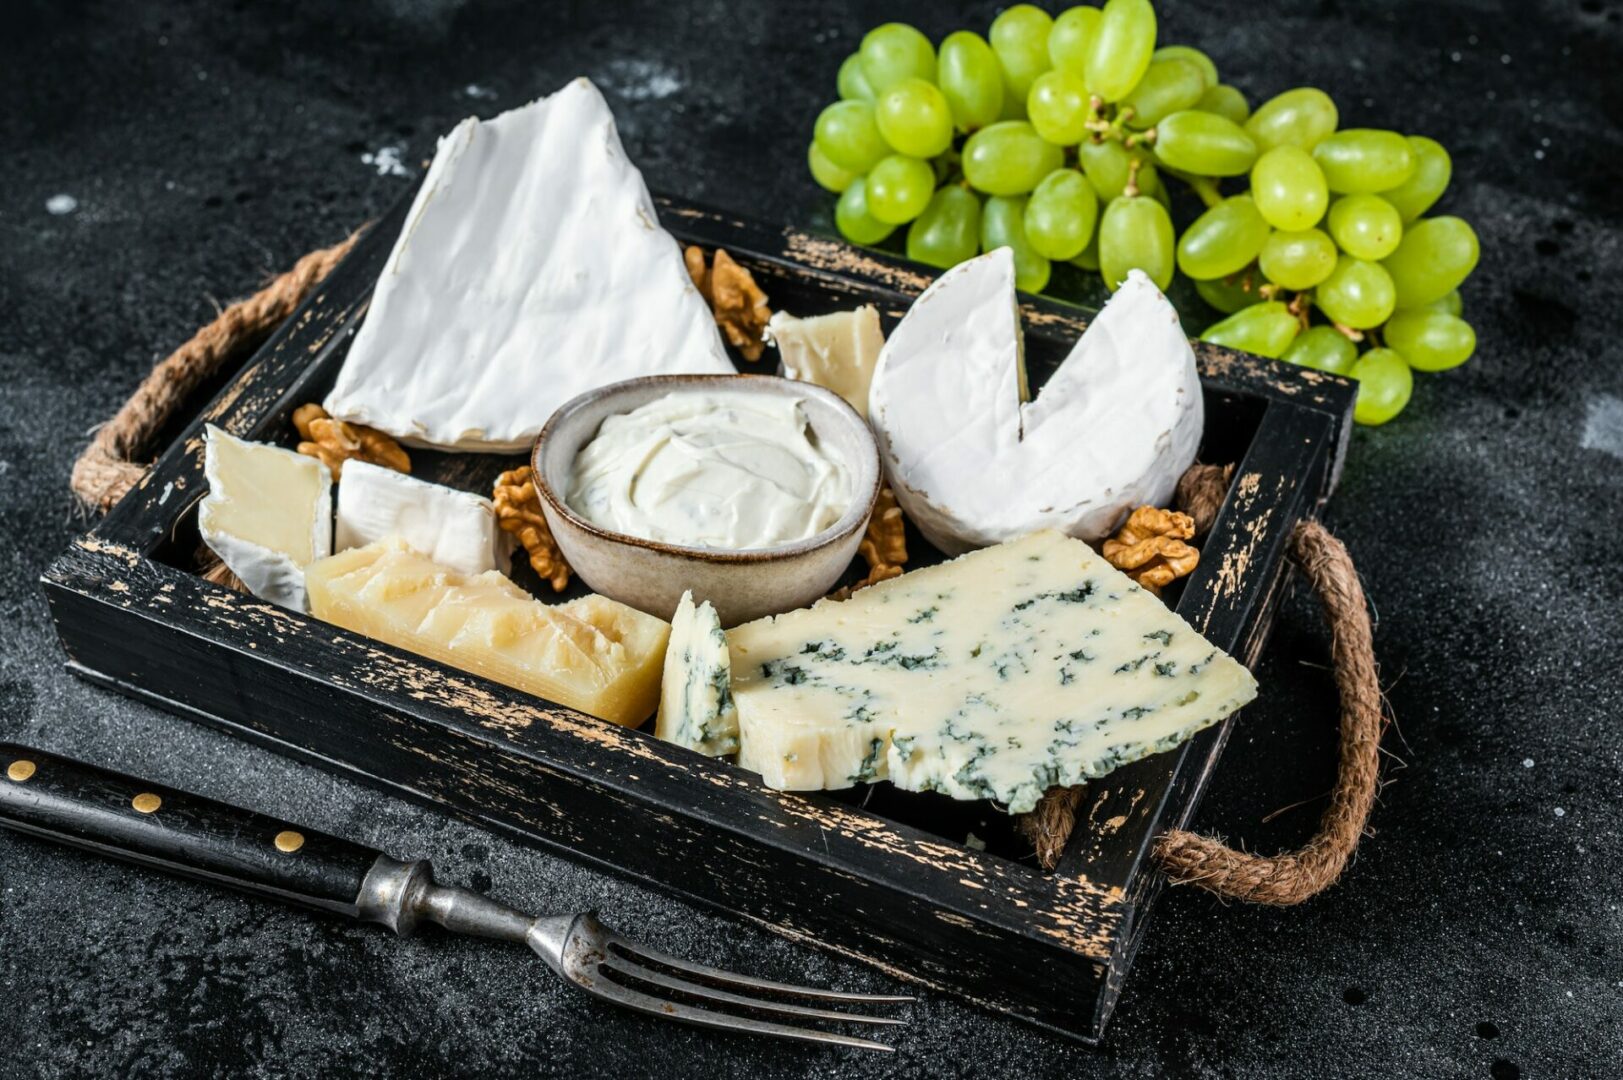 Les fromages de caractère, pour un mariage original